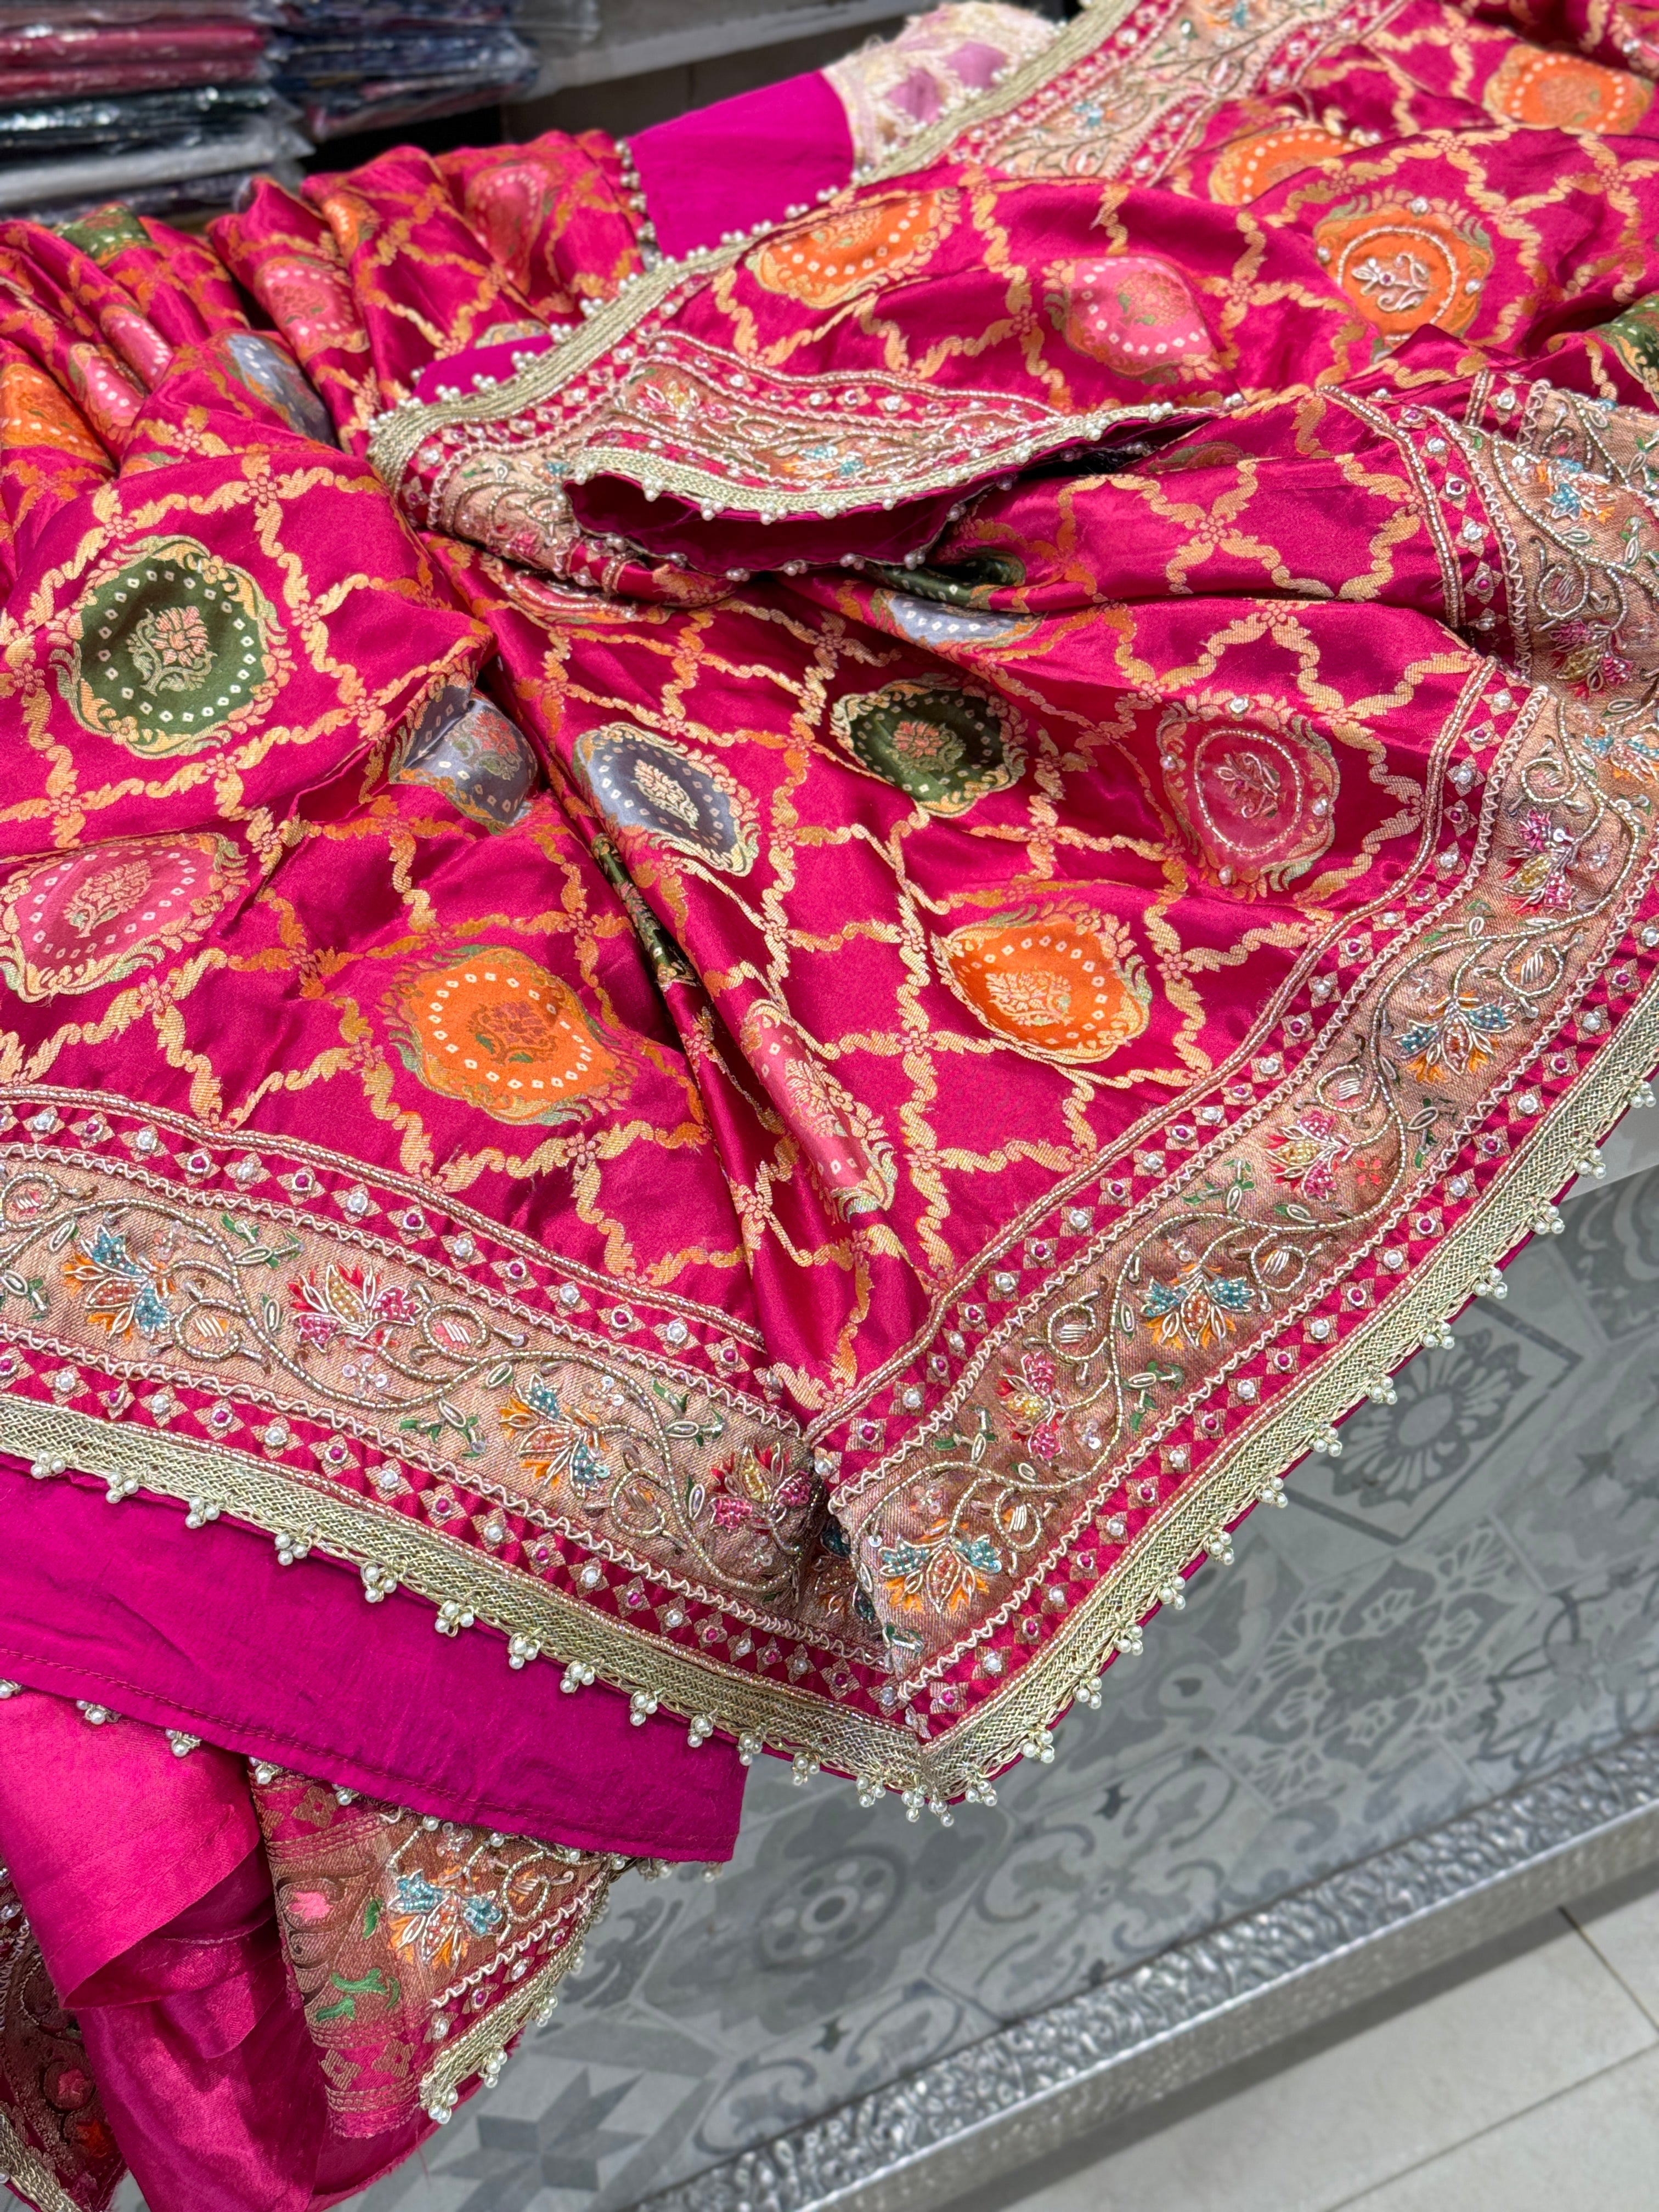 Rani Modal Rangkat Banarasi Hand Embroidery Saree